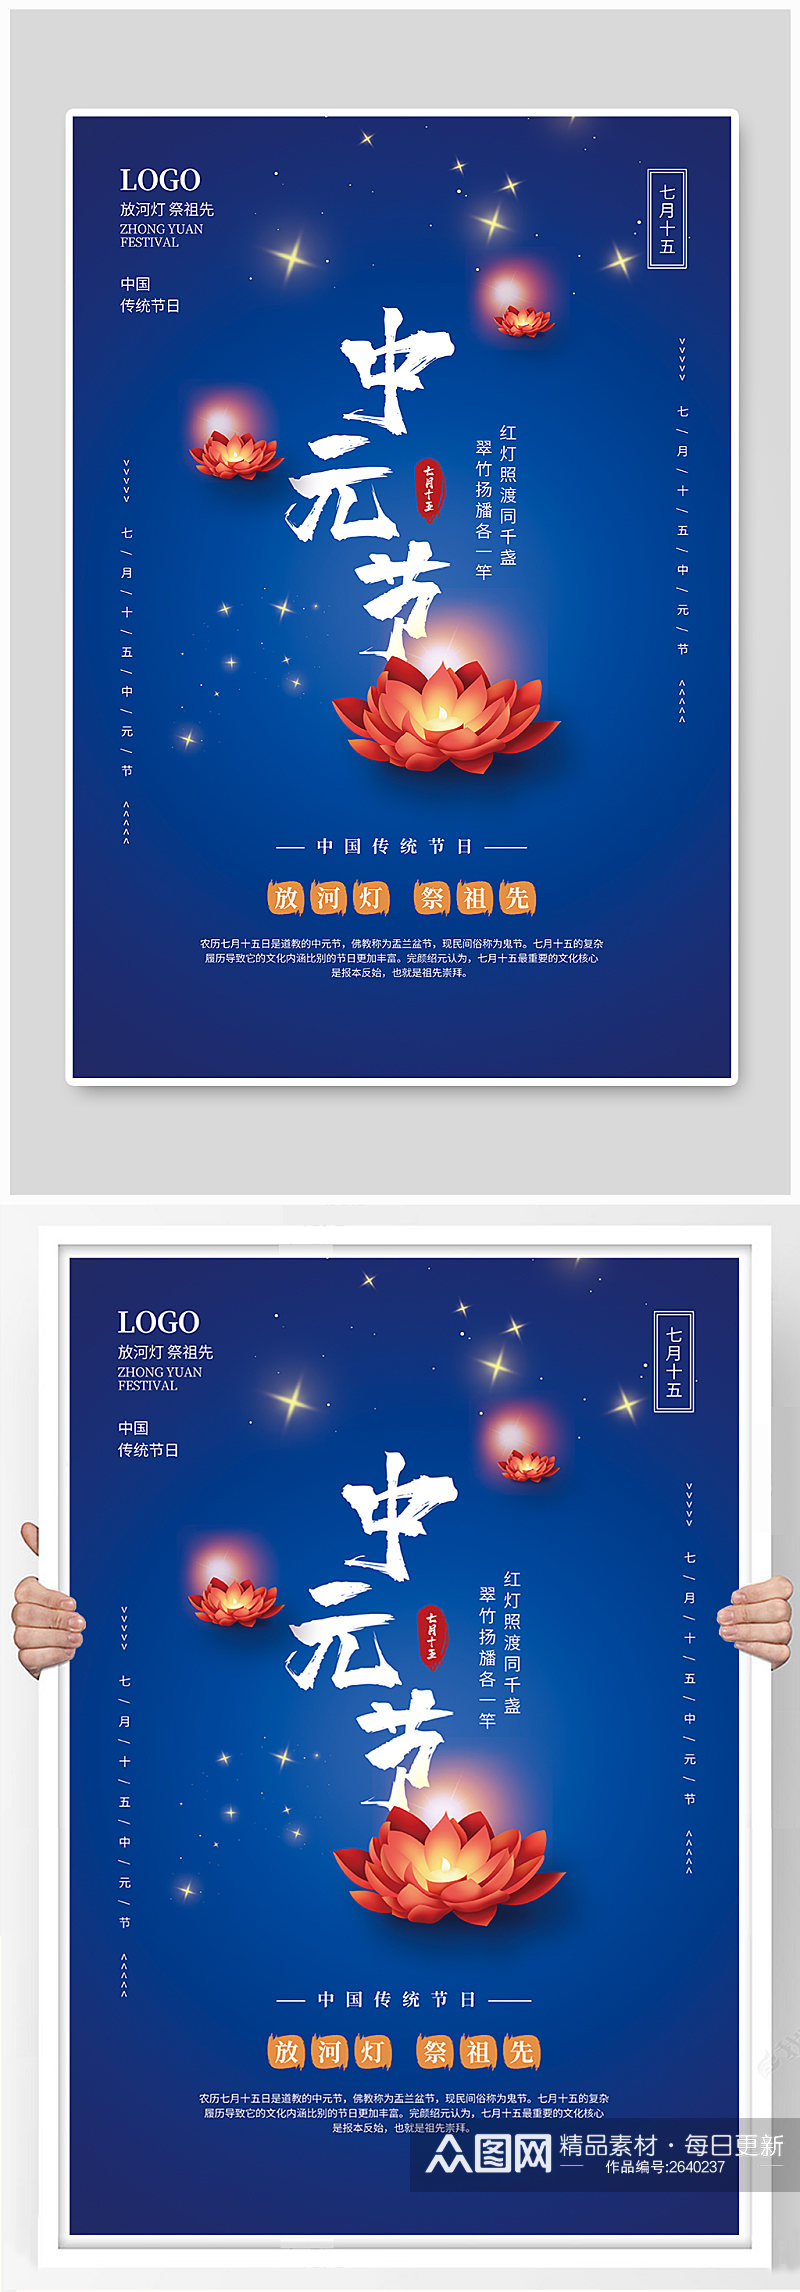 中元节传统节日海报素材